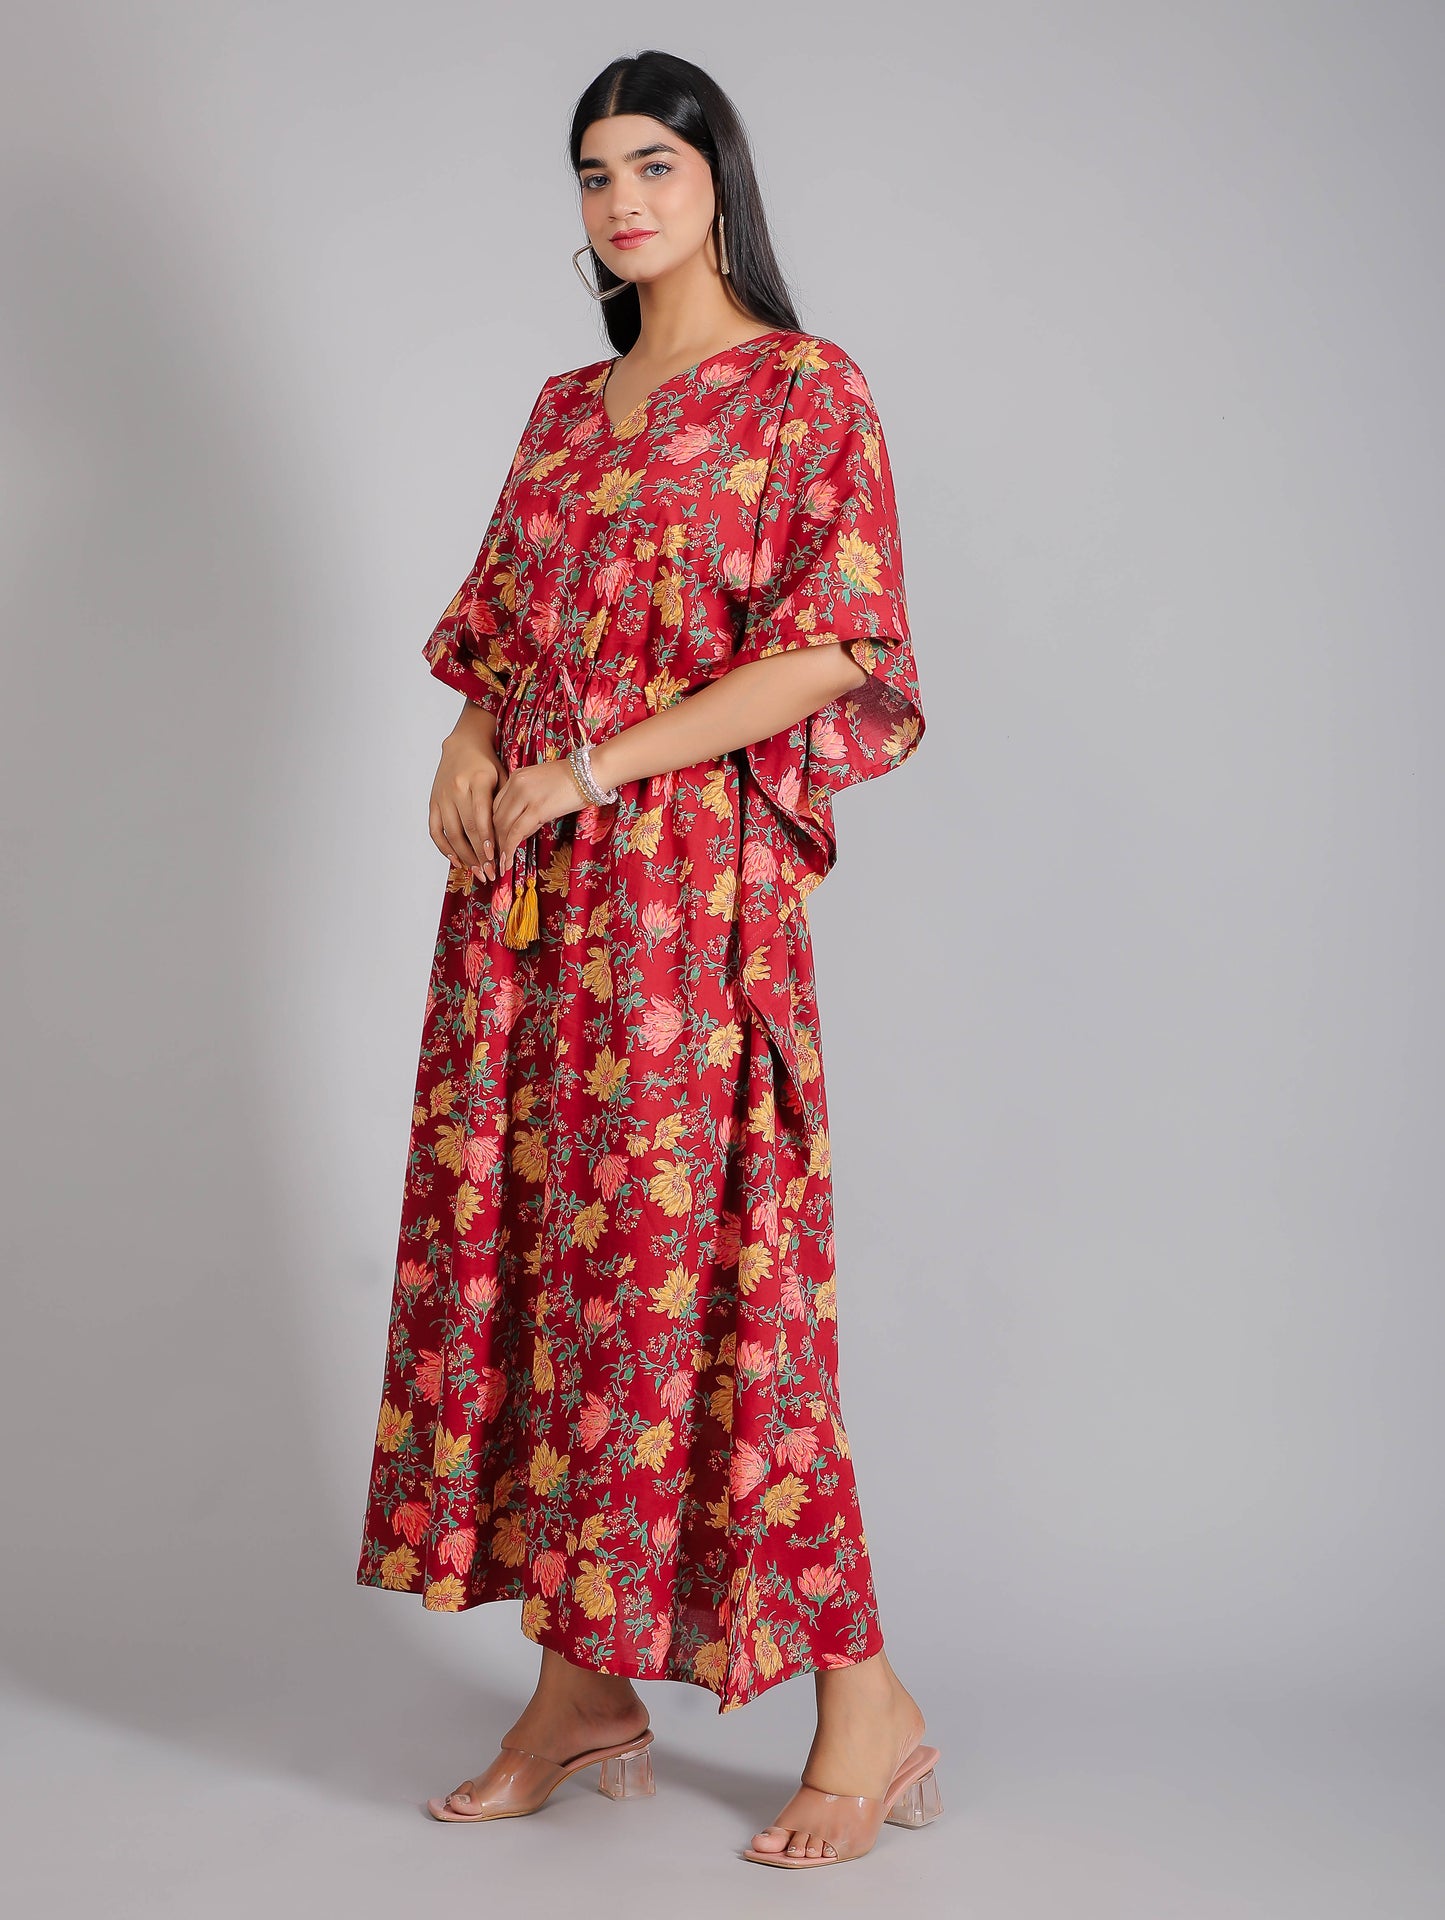 Floral Motifs on Maroon Cotton Kaftan Maxi Dress